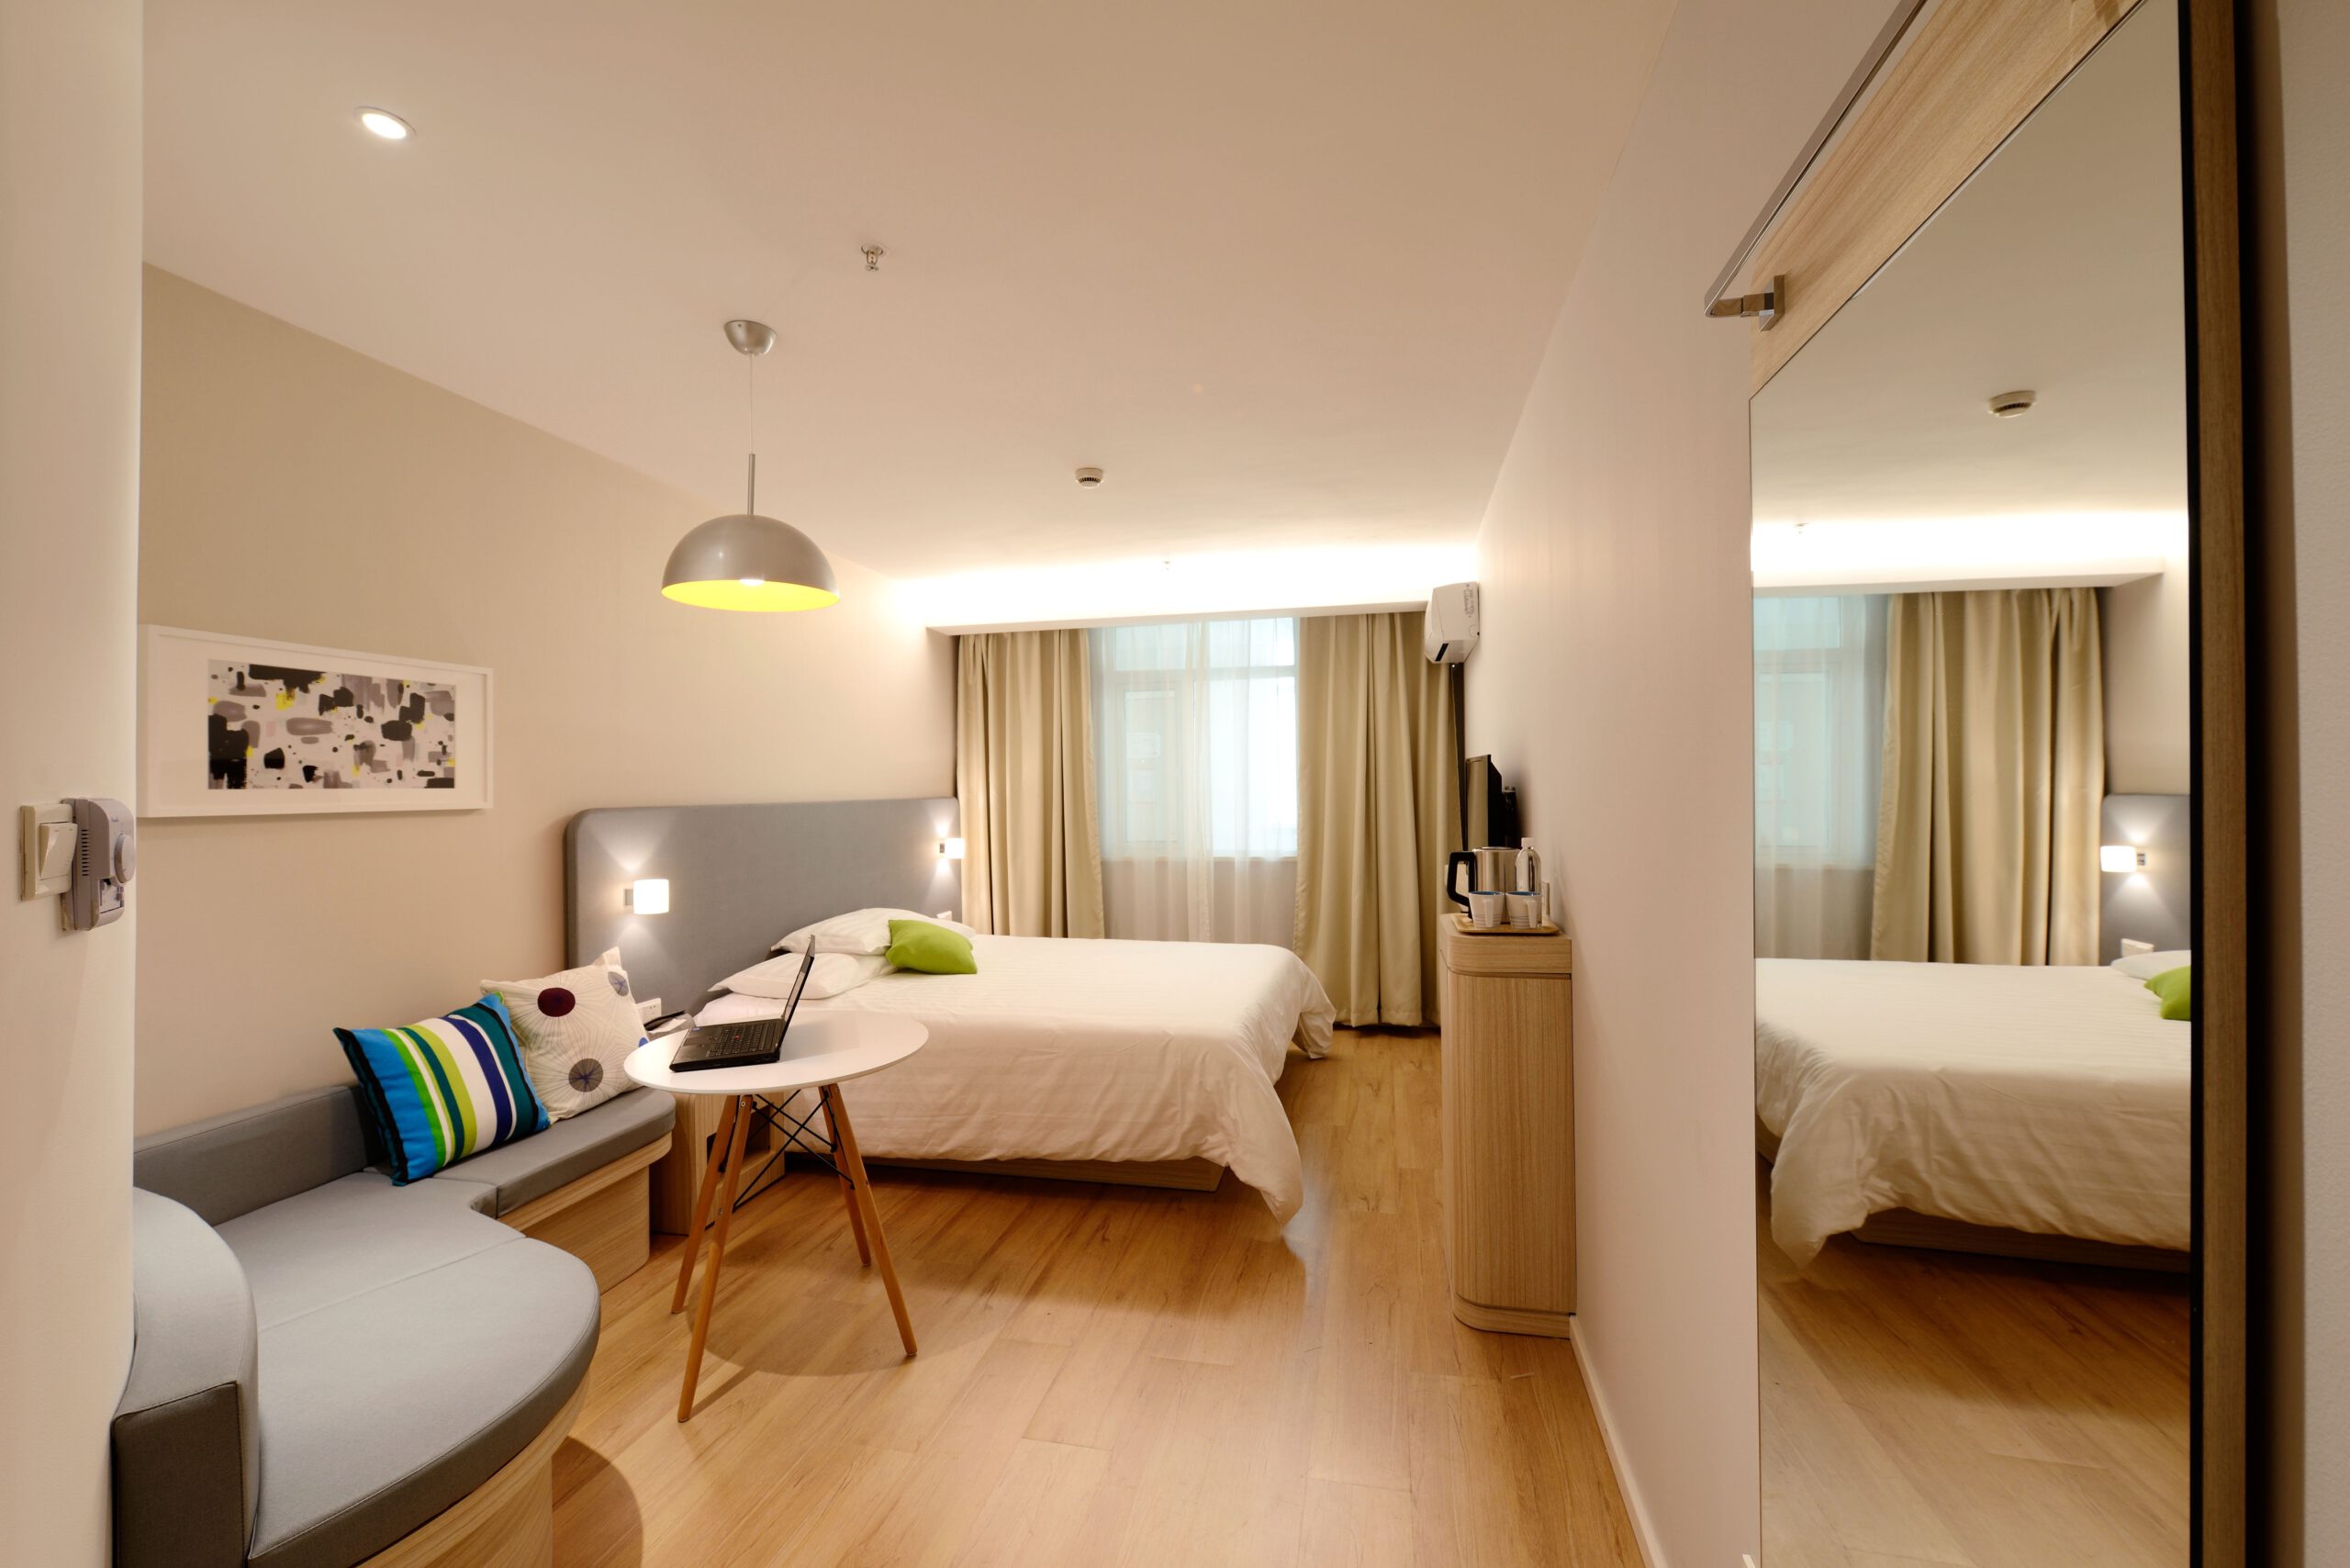 Elegancki minimalistyczny pokój w jednym z hoteli w Płocku, w którym warto się zatrzymać